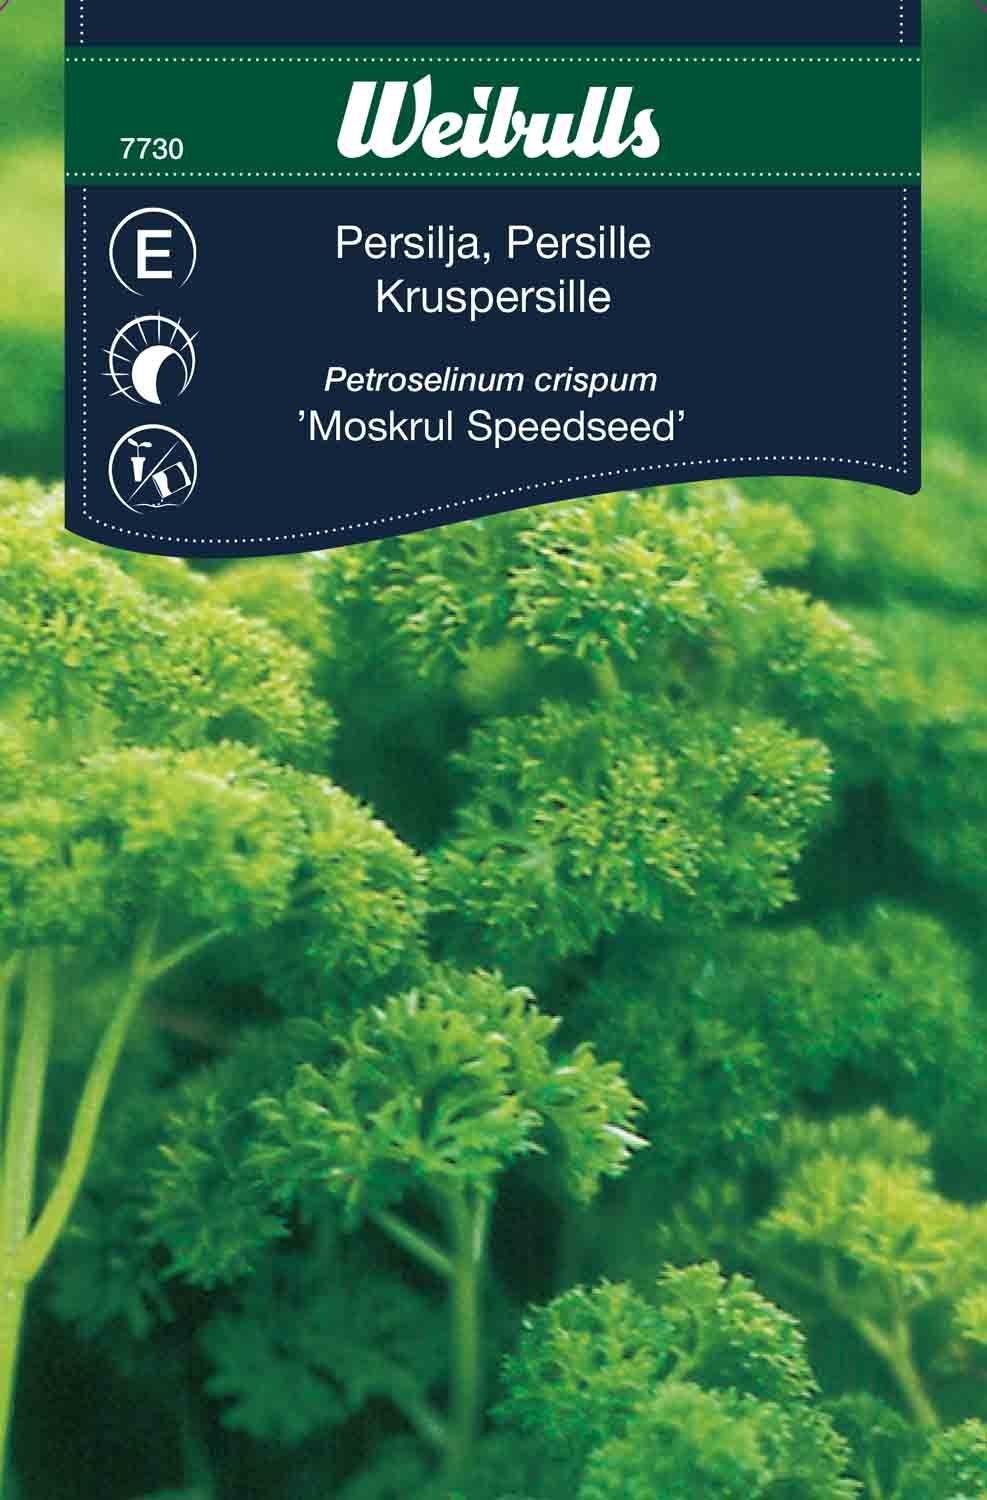 Persilja Moss Speedseed